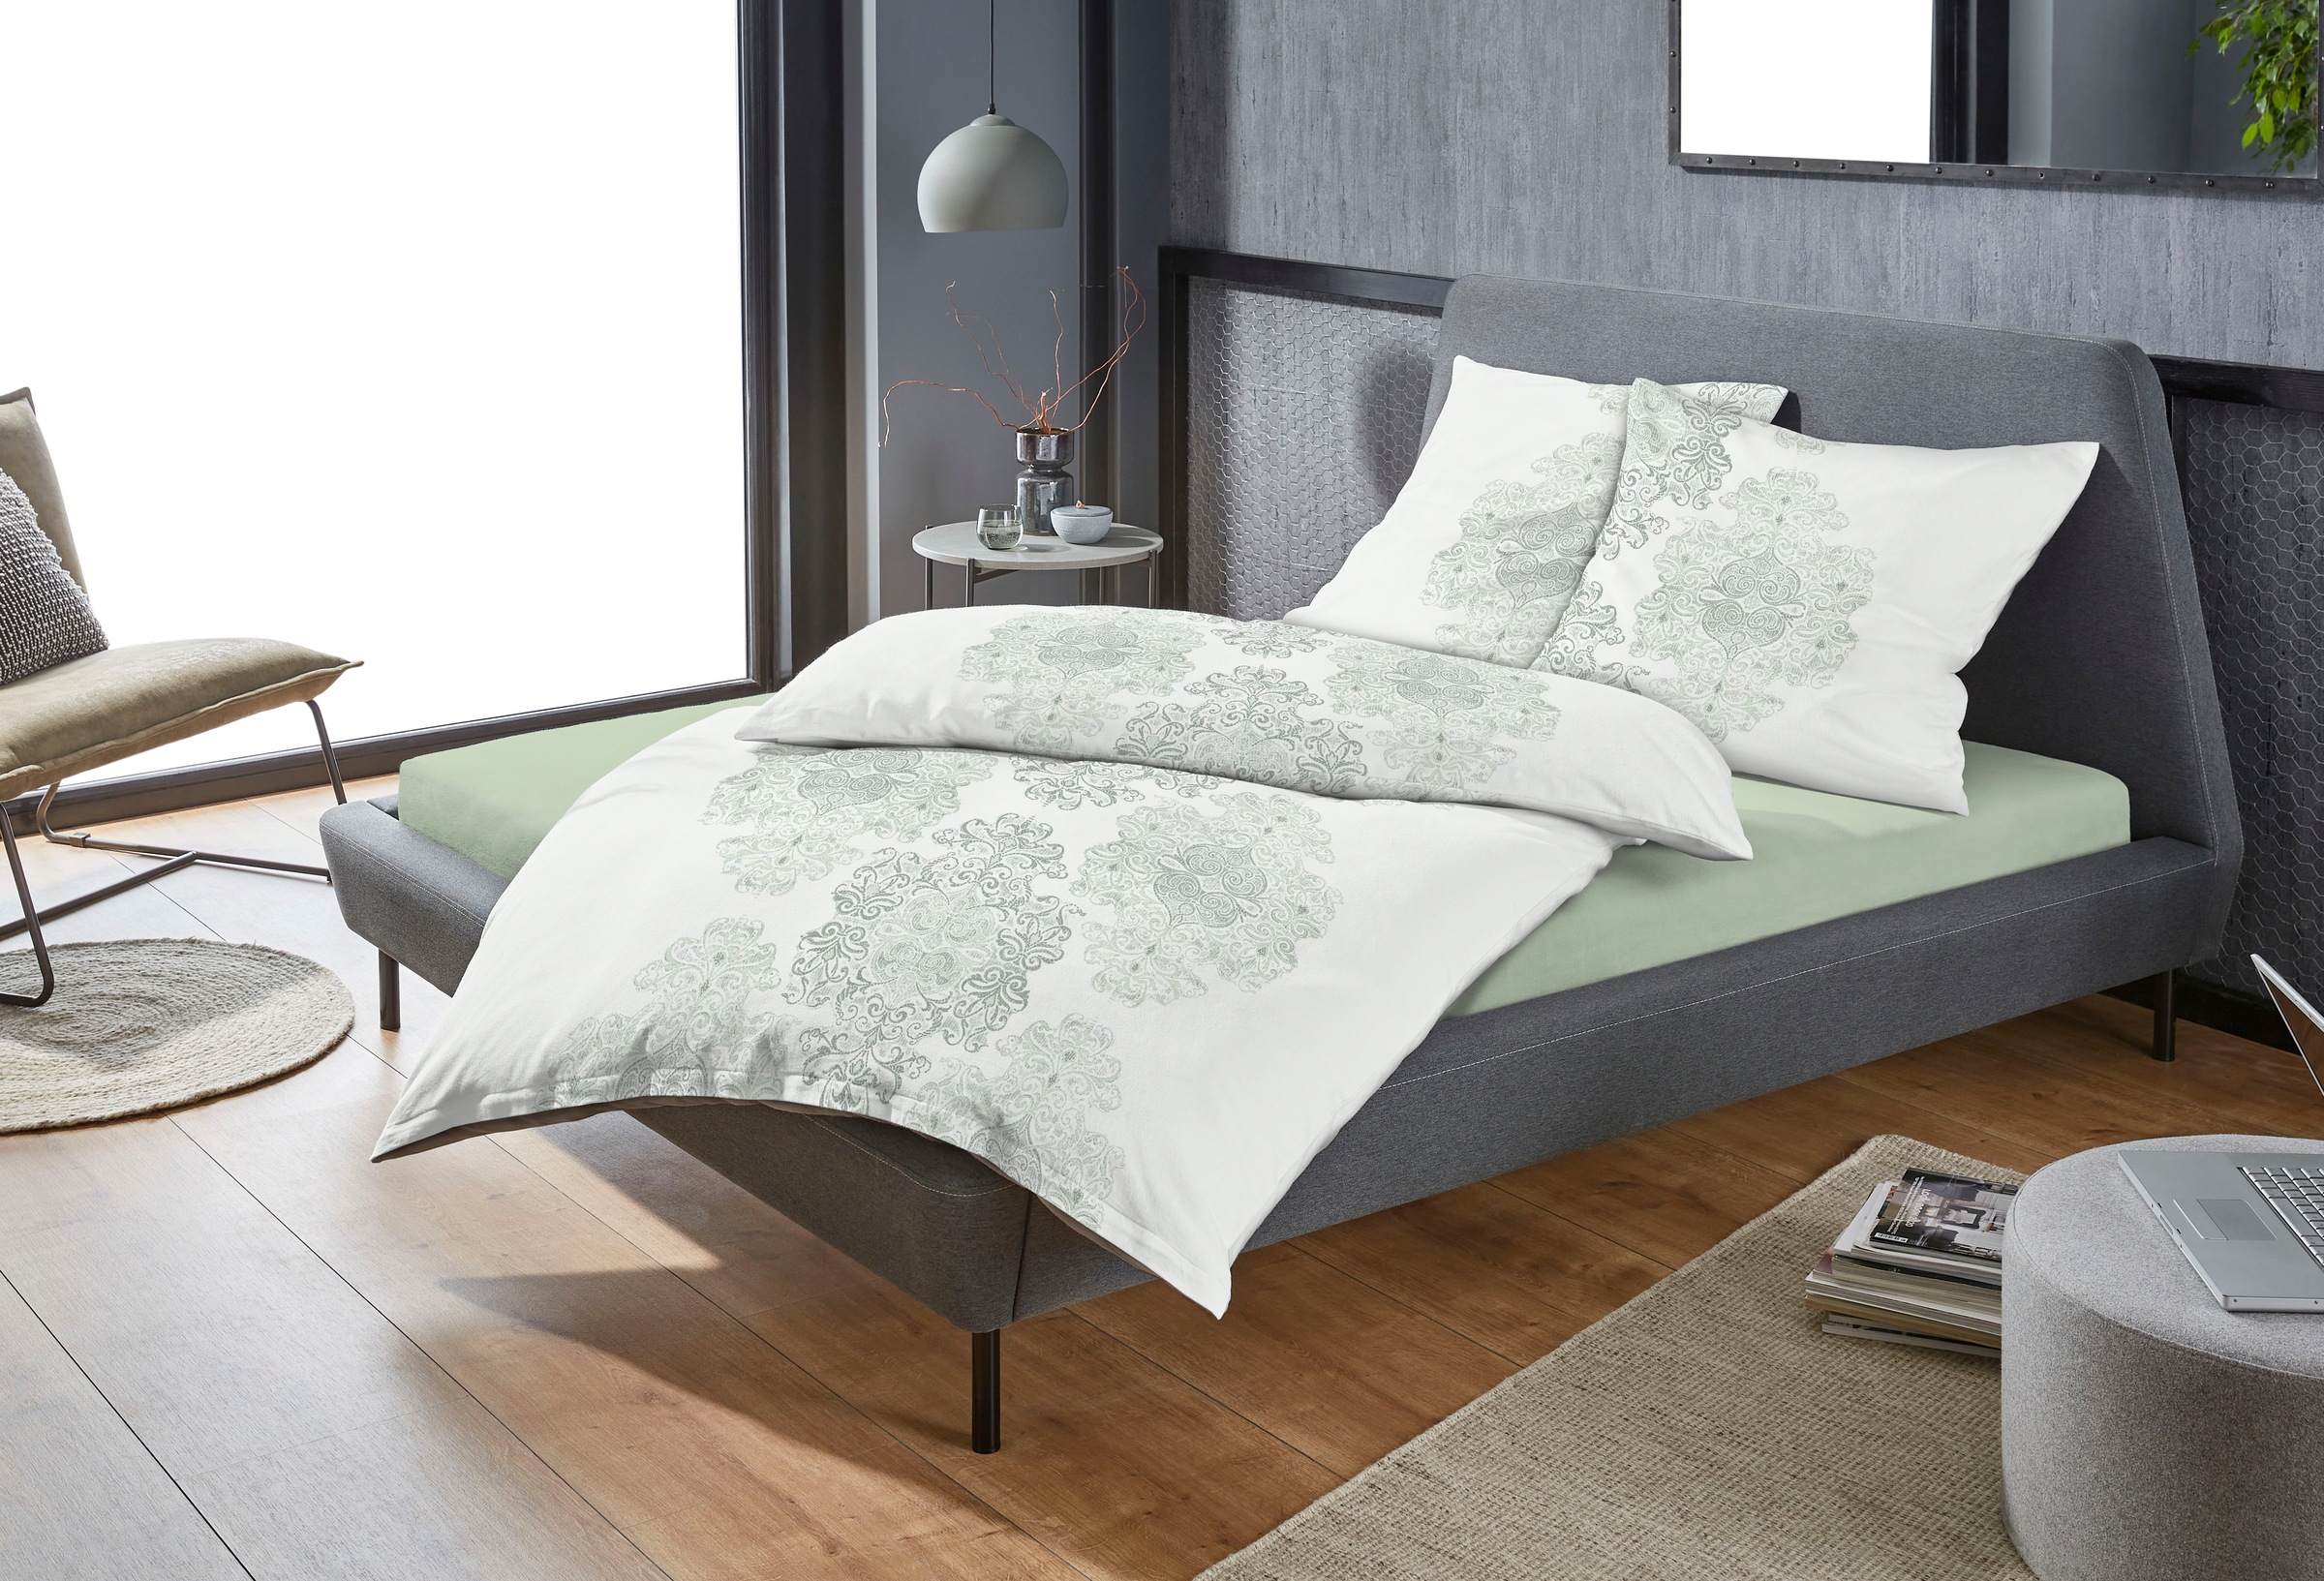 Zeitgeist Bettwäsche »Orient in Gr. 135x200 oder 155x220 cm«, (2 tlg.), mit dezenten Ornamenten, Bettwäsche aus Baumwolle mit Reißverschluss